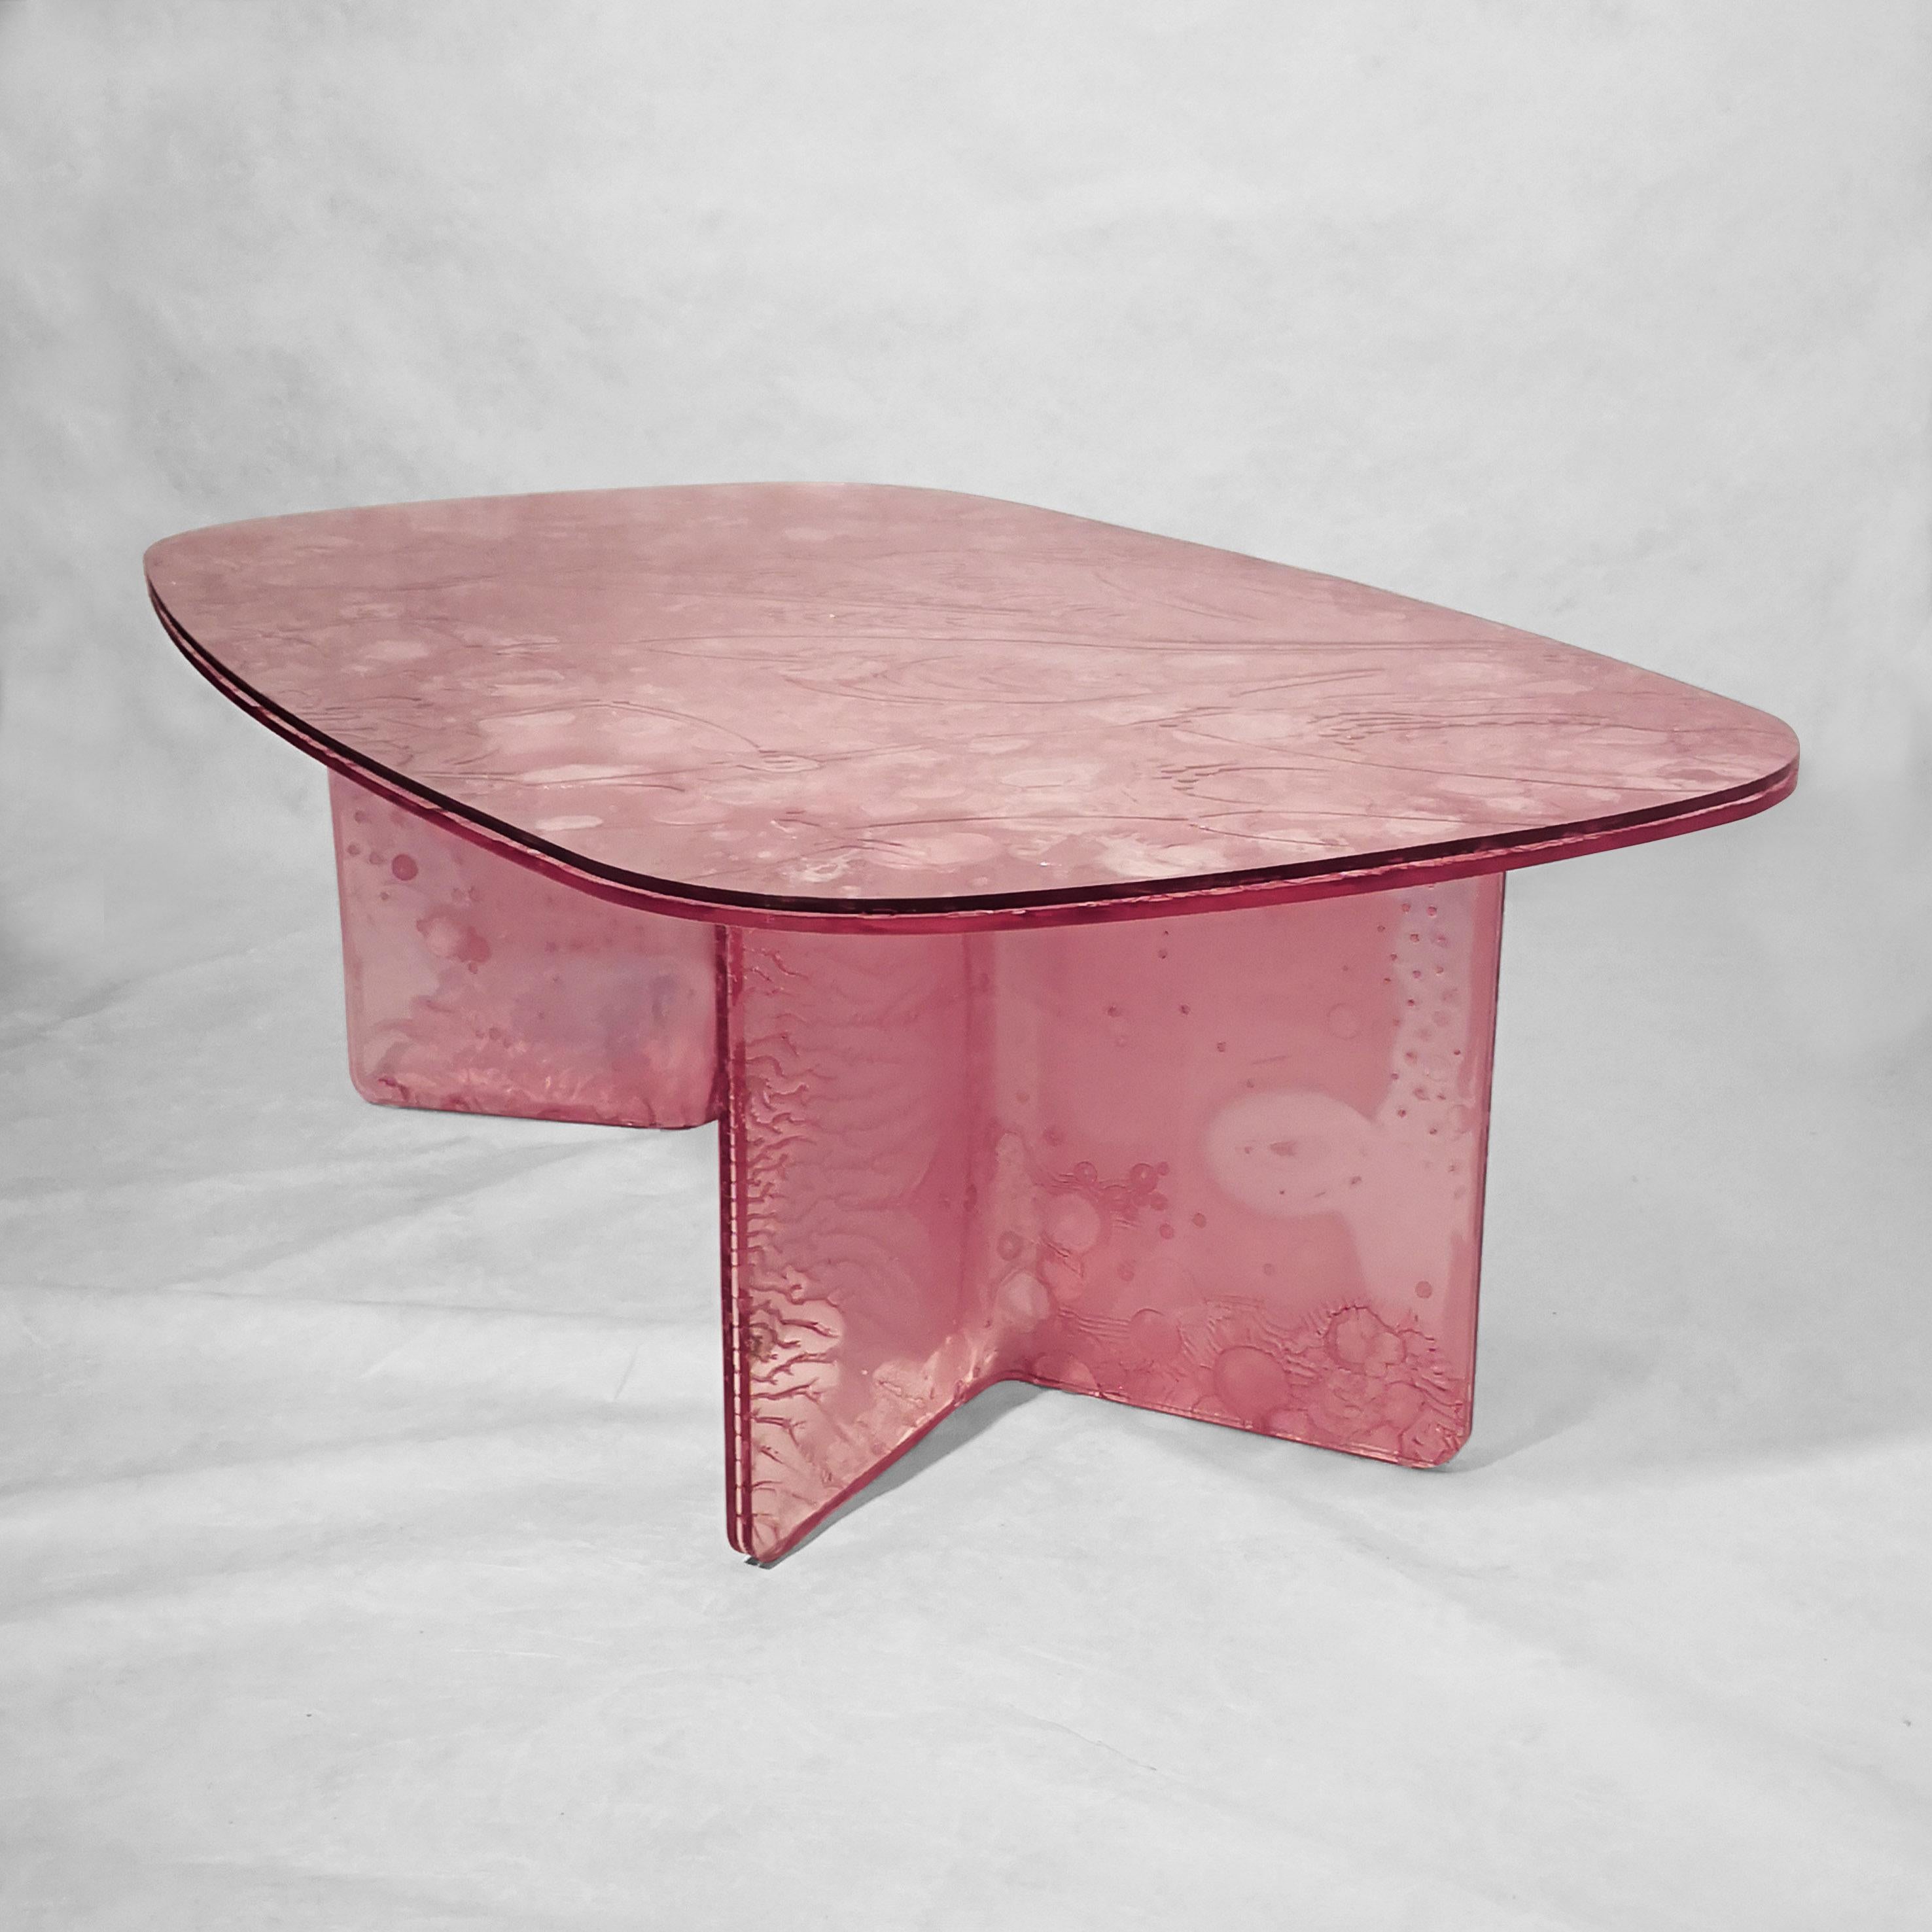 Couchtisch, handgefertigt aus transparentem rosa Acryl, gefärbt mit einer innovativen Technologie.
Das MATERIAL wird durch die Verschmelzung von drei Platten hergestellt, von denen eine
teilweise ausgehärtetes Zentrum.
Dieser Prozess erzeugt